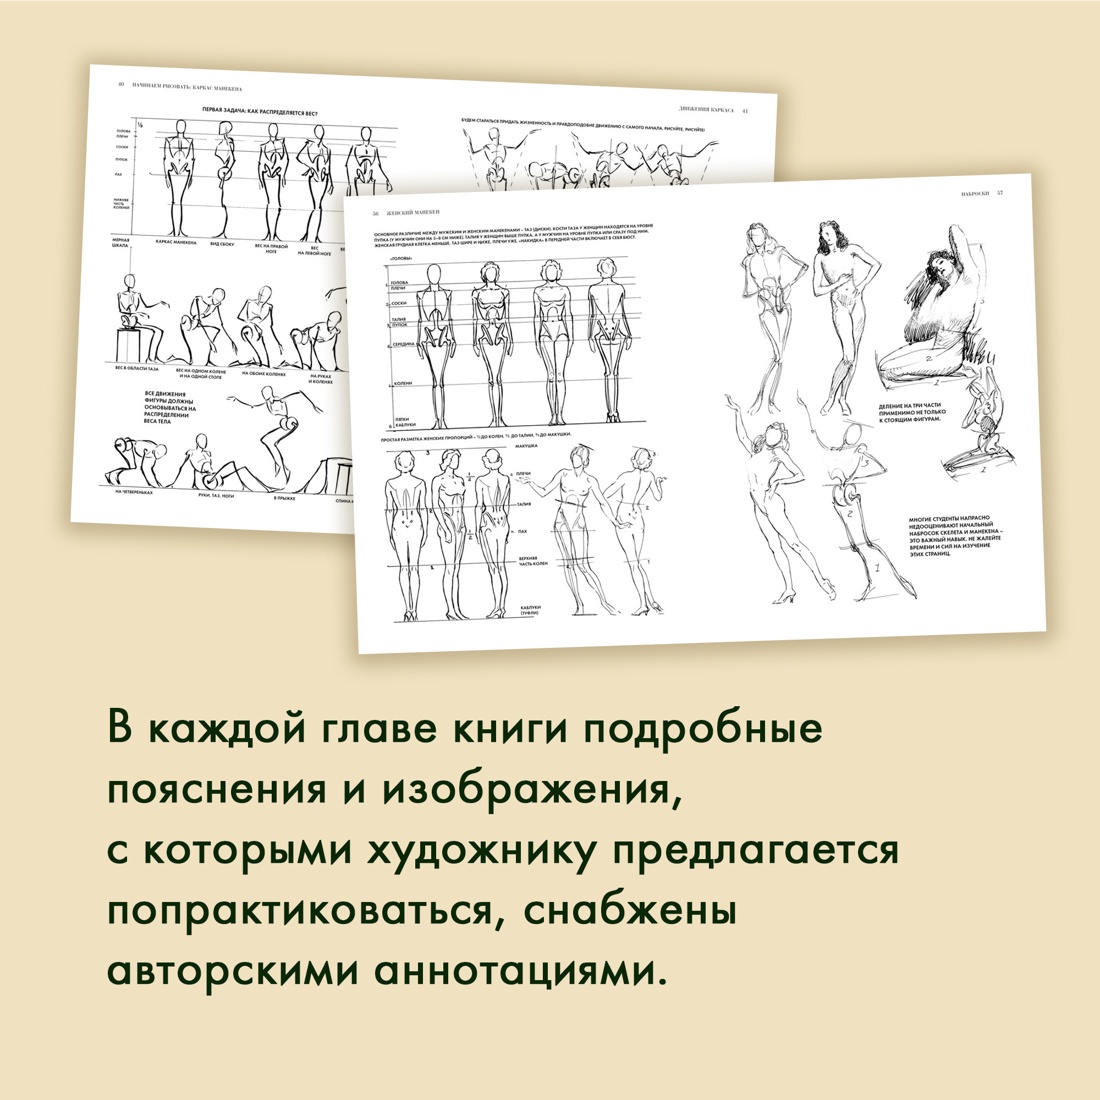 Промо материал к книге "Рисование фигуры" №3